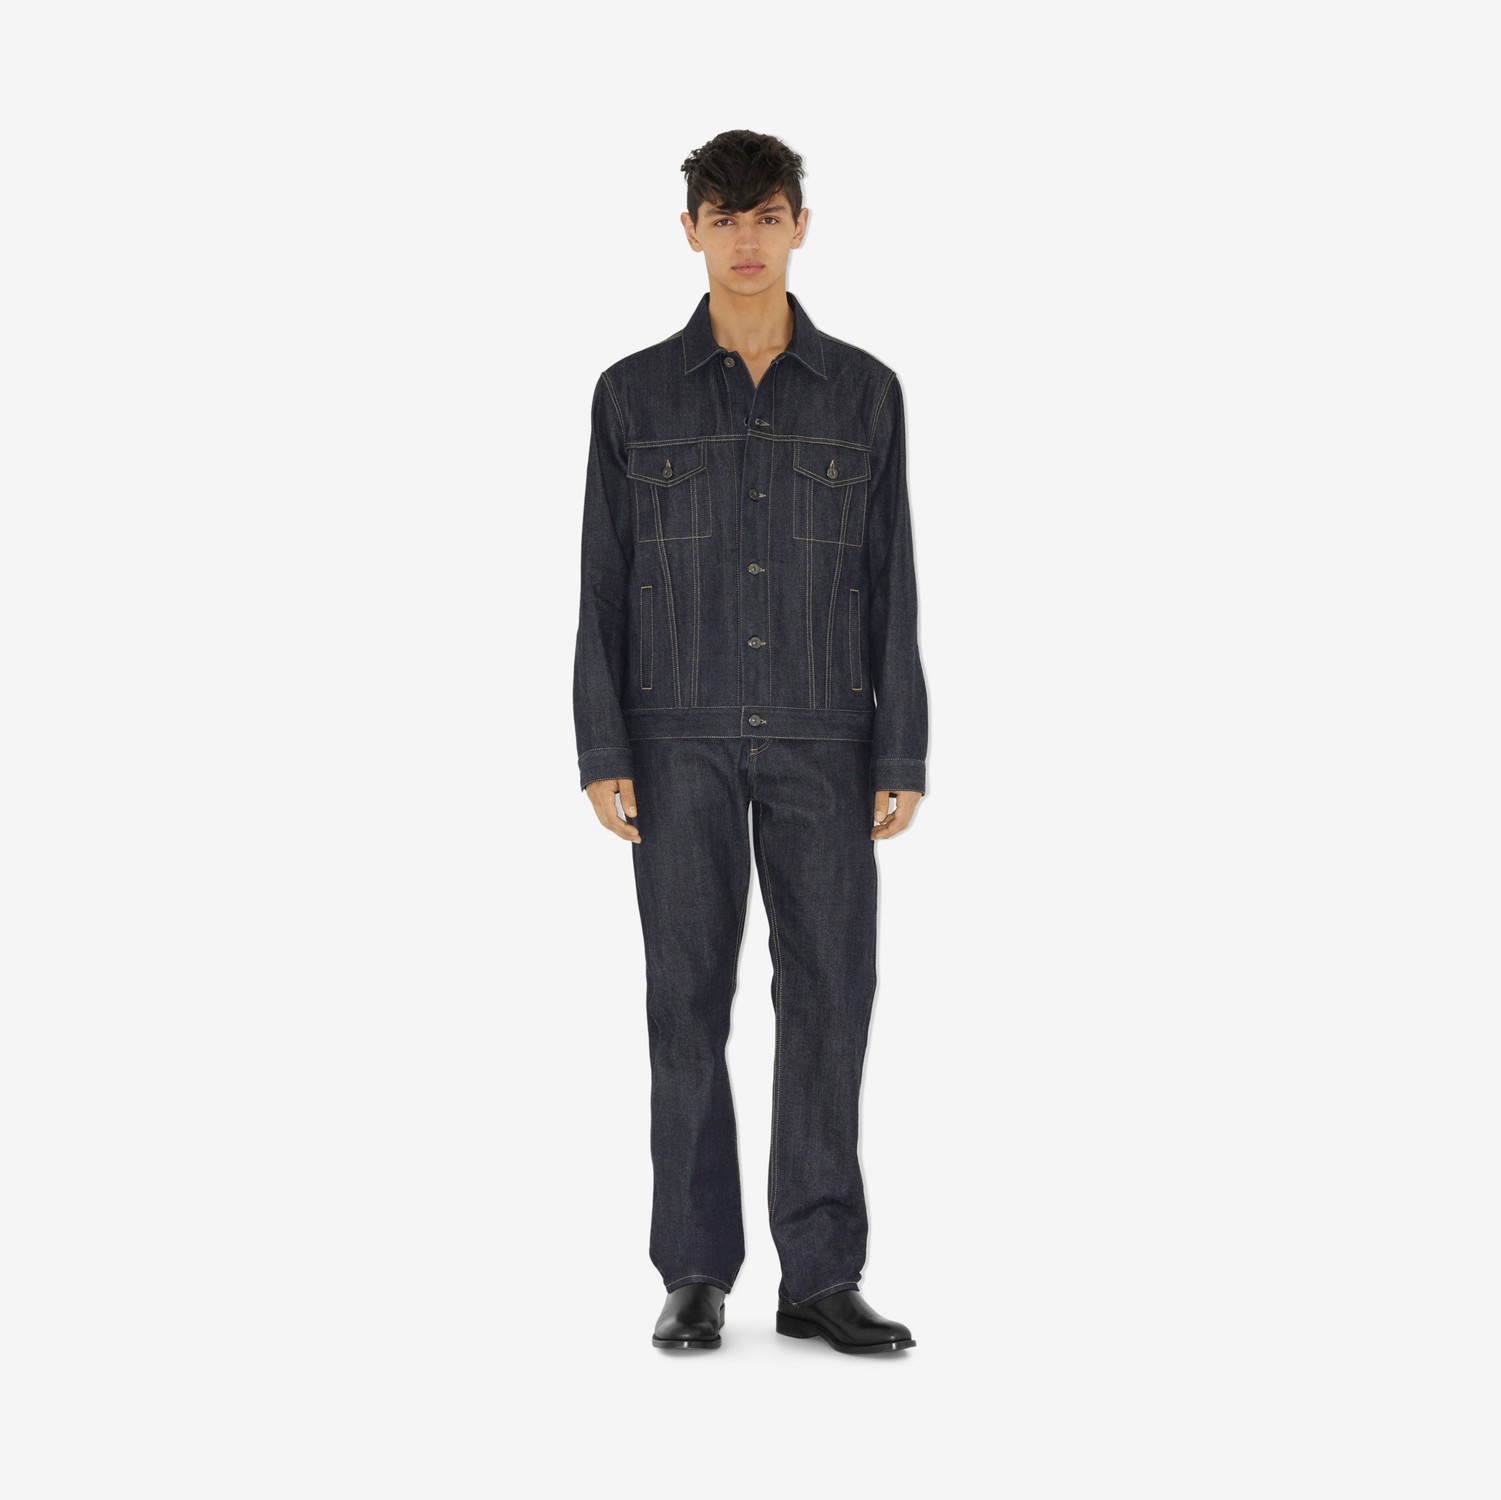 Jeans aus japanischem Denim in gerader Passform (Indigo) - Herren | Burberry®